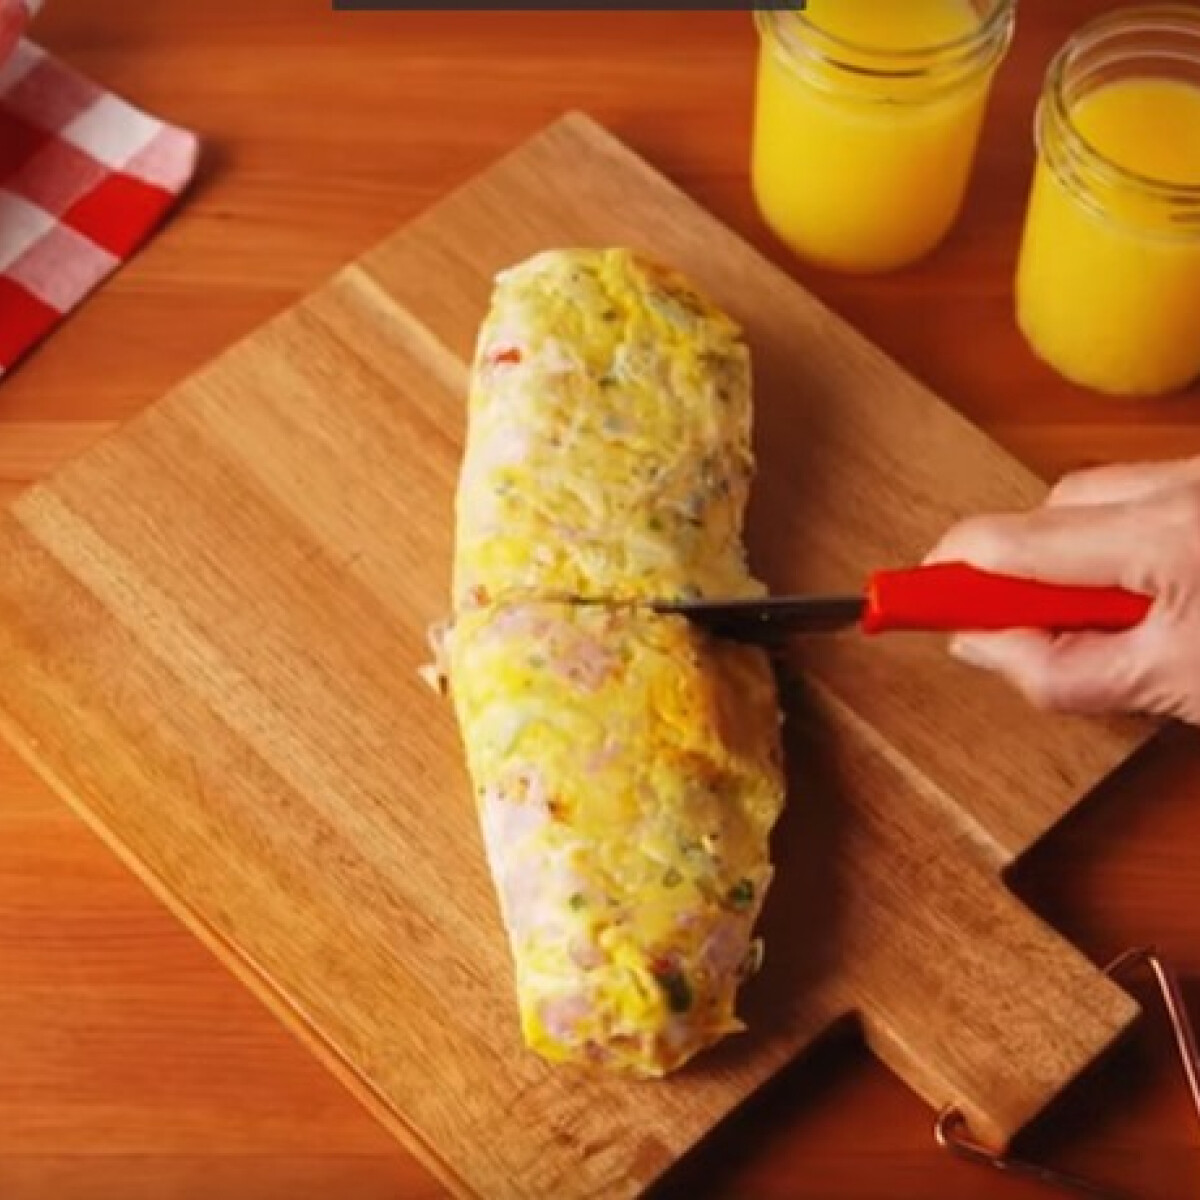 Újabb idióta módszer született - emberek ZACSKÓBAN főznek omlettet, nézzétek